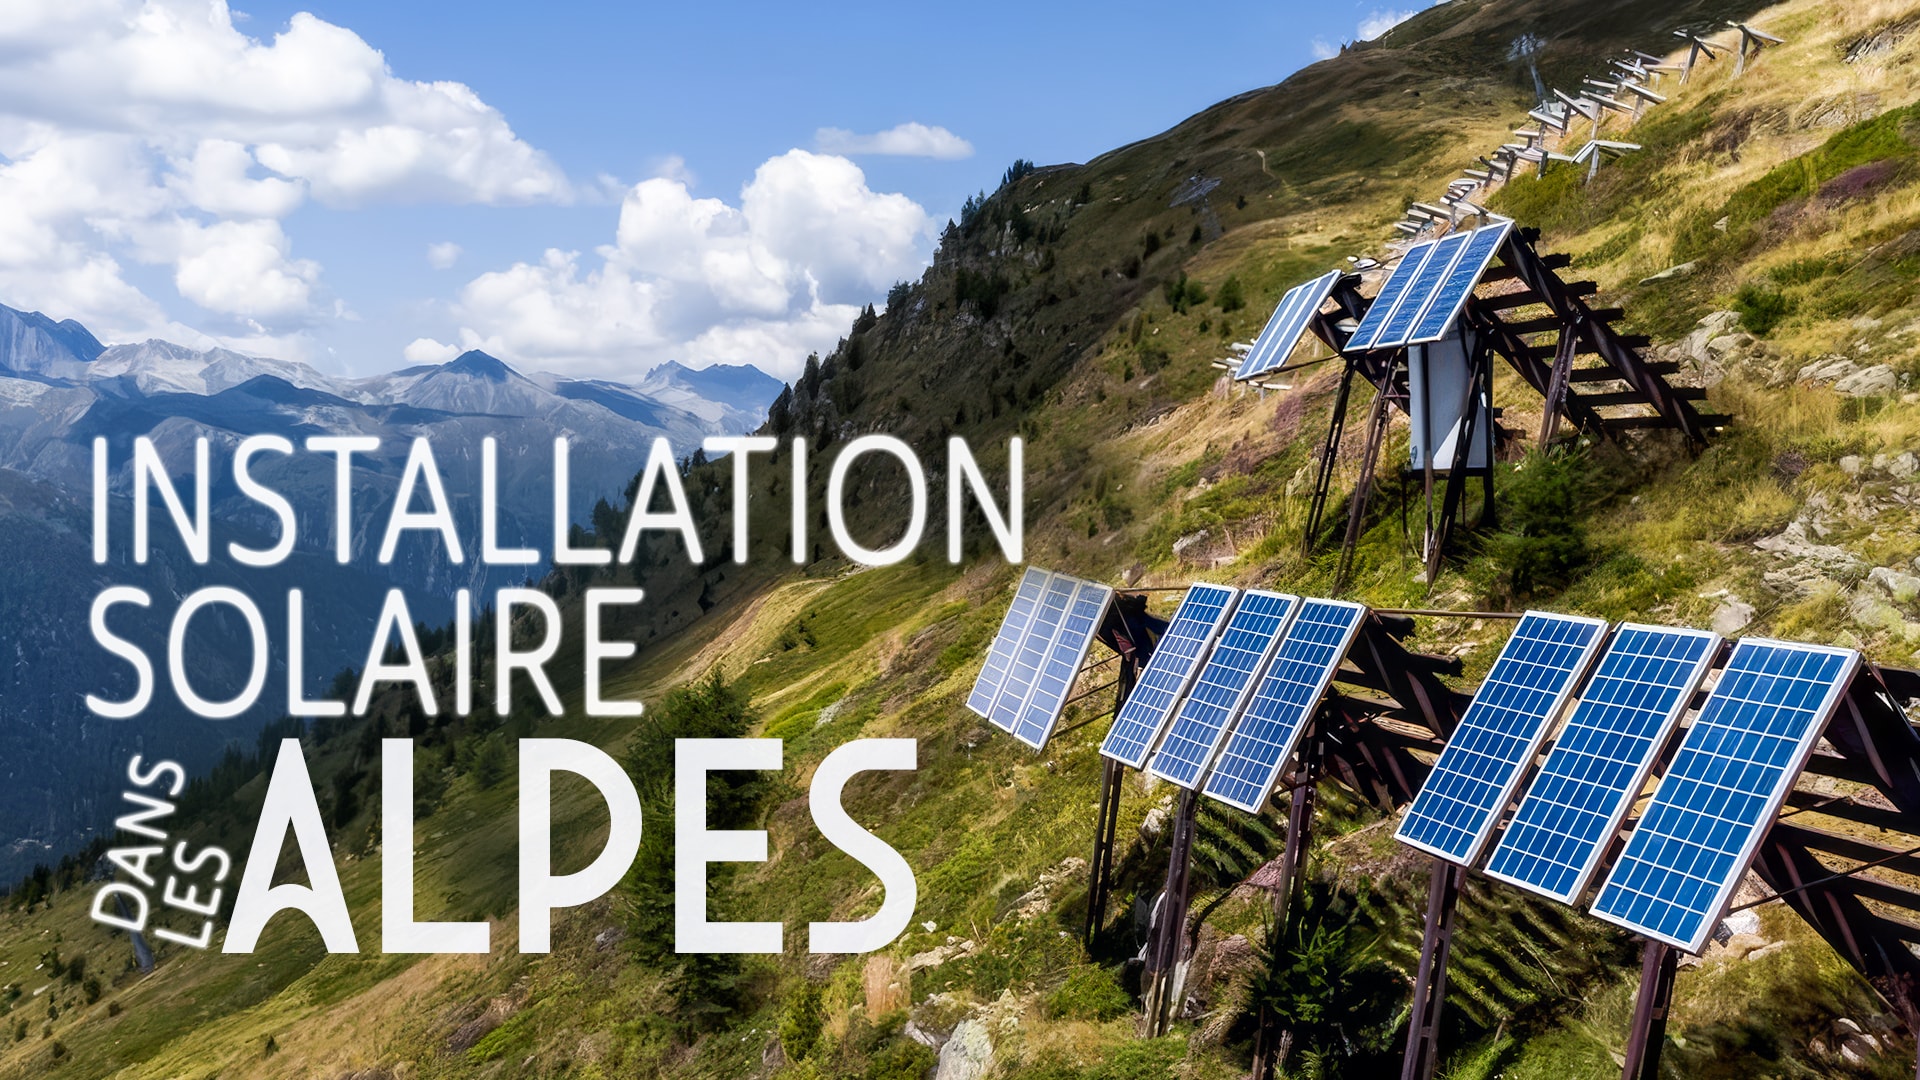 Installation solaire dans les Alpes